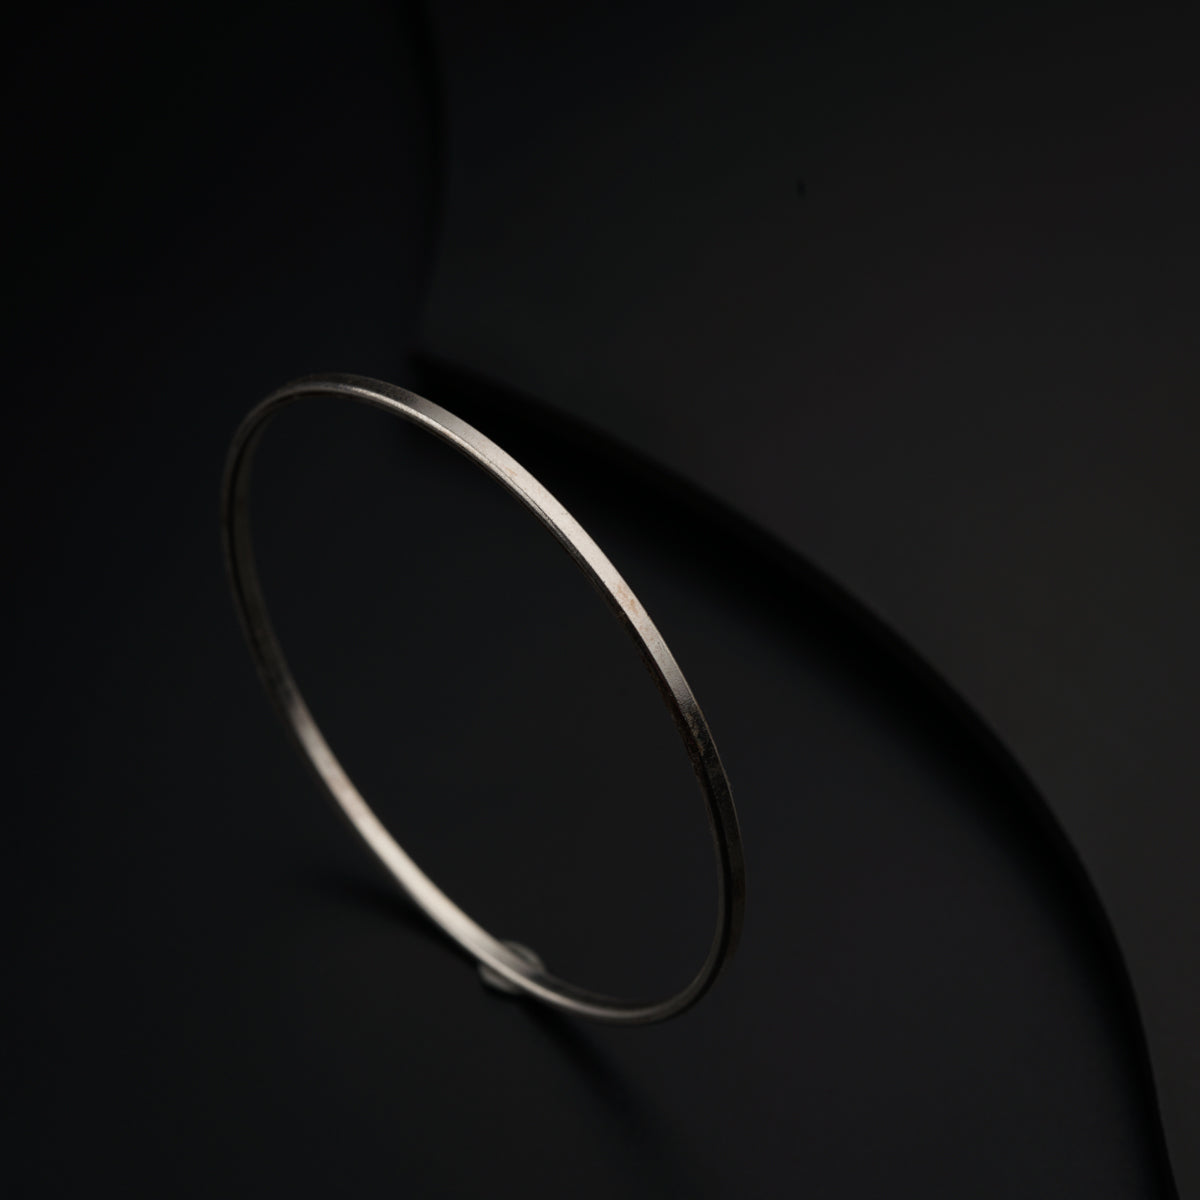 a thin silver bracelet on a black surface